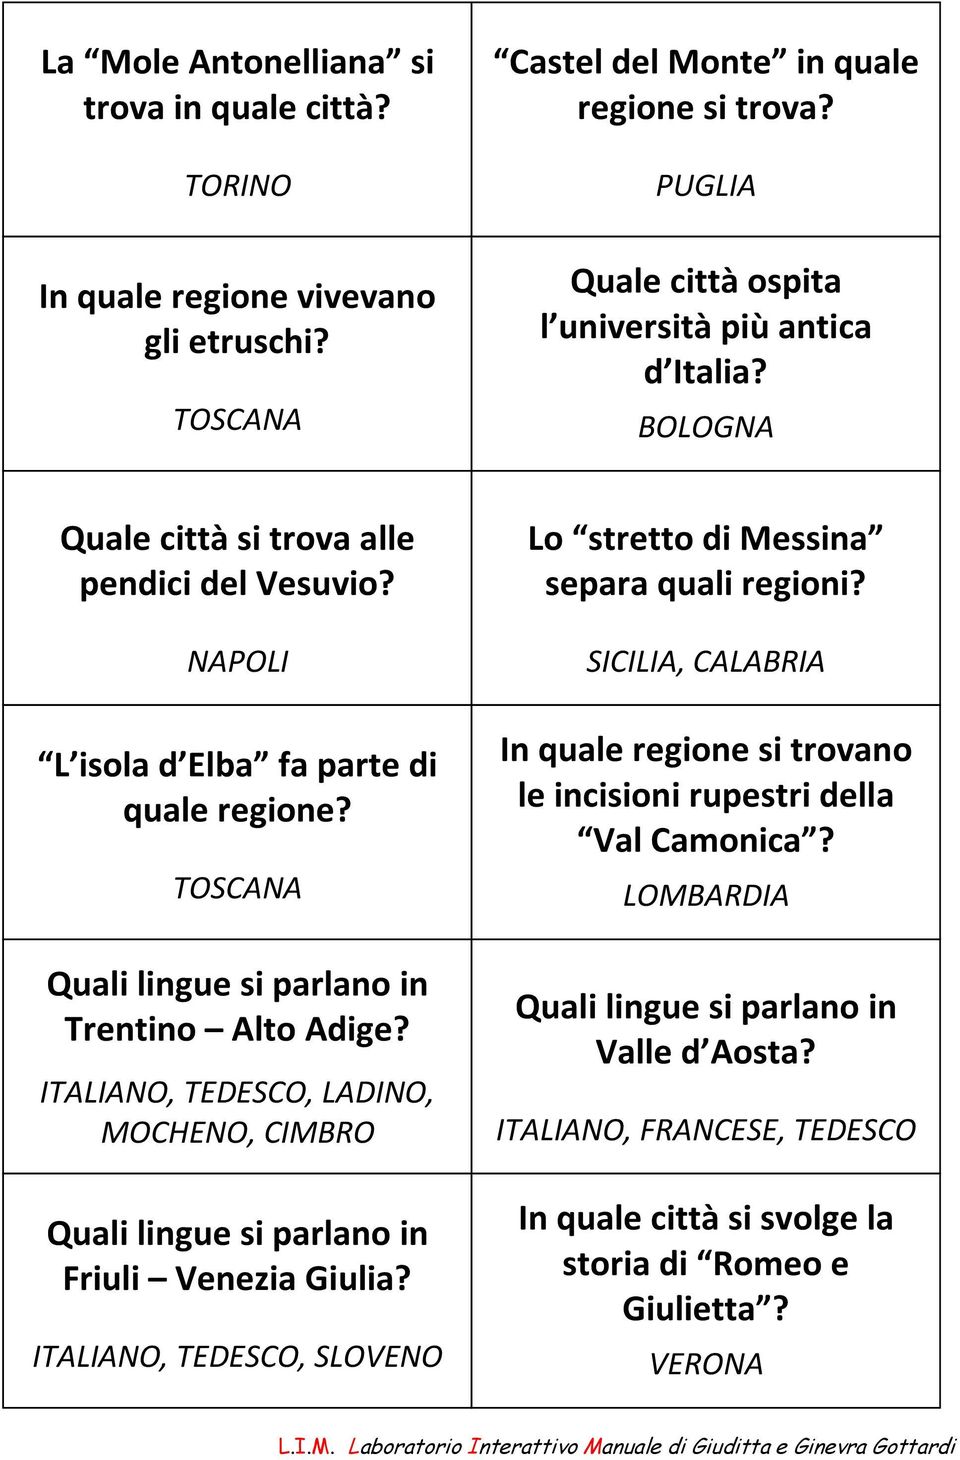 NAPOLI L isola d Elba fa parte di TOSCANA Quali lingue si parlano in Trentino Alto Adige? ITALIANO, TEDESCO, LADINO, MOCHENO, CIMBRO Quali lingue si parlano in Friuli Venezia Giulia?